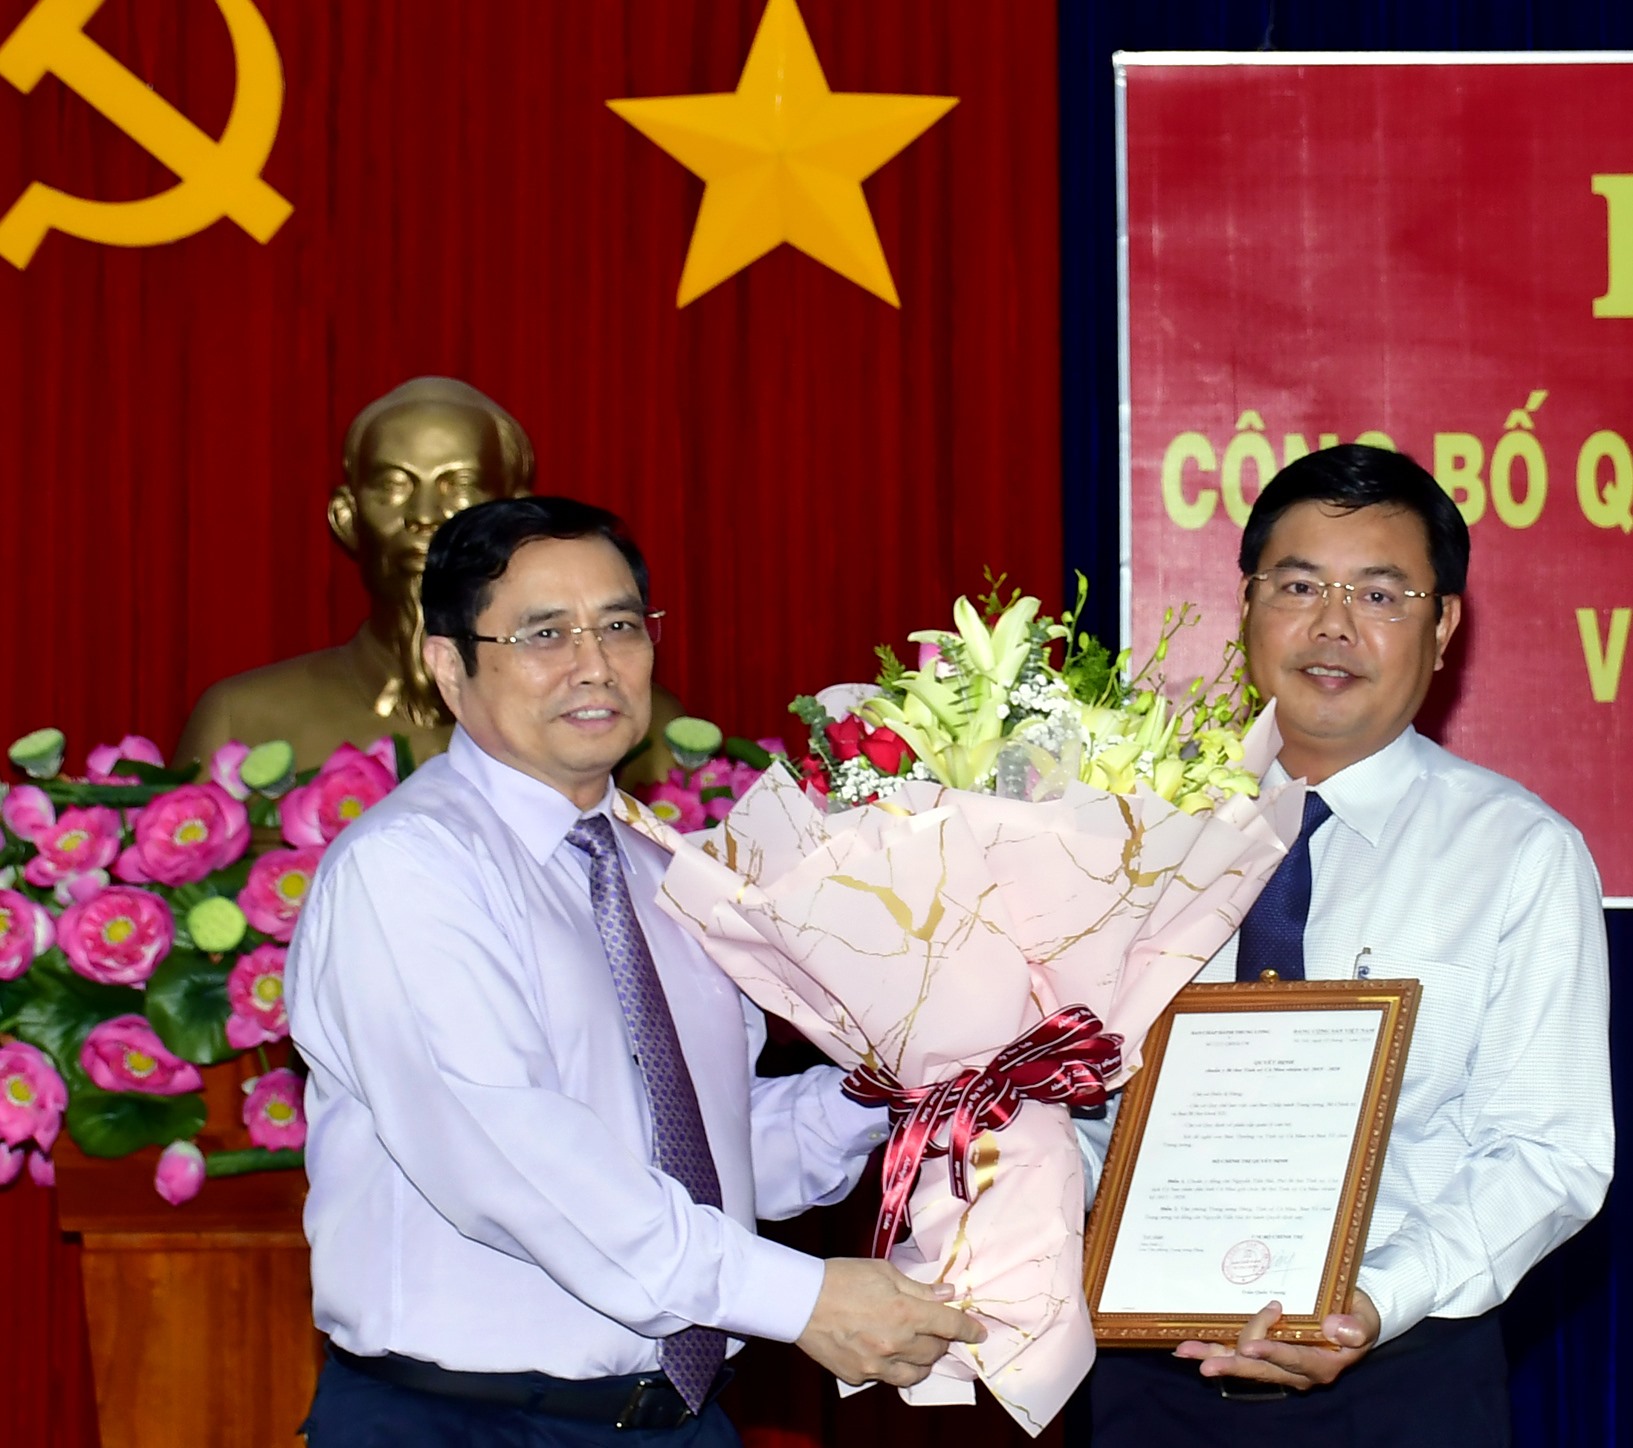 Chủ tịch UBND tỉnh Cà Mau Nguyễn Tiến Hải nhận quyết định làm Bí thư Tỉnh ủy Cà Mau (ảnh Nhật Hồ)